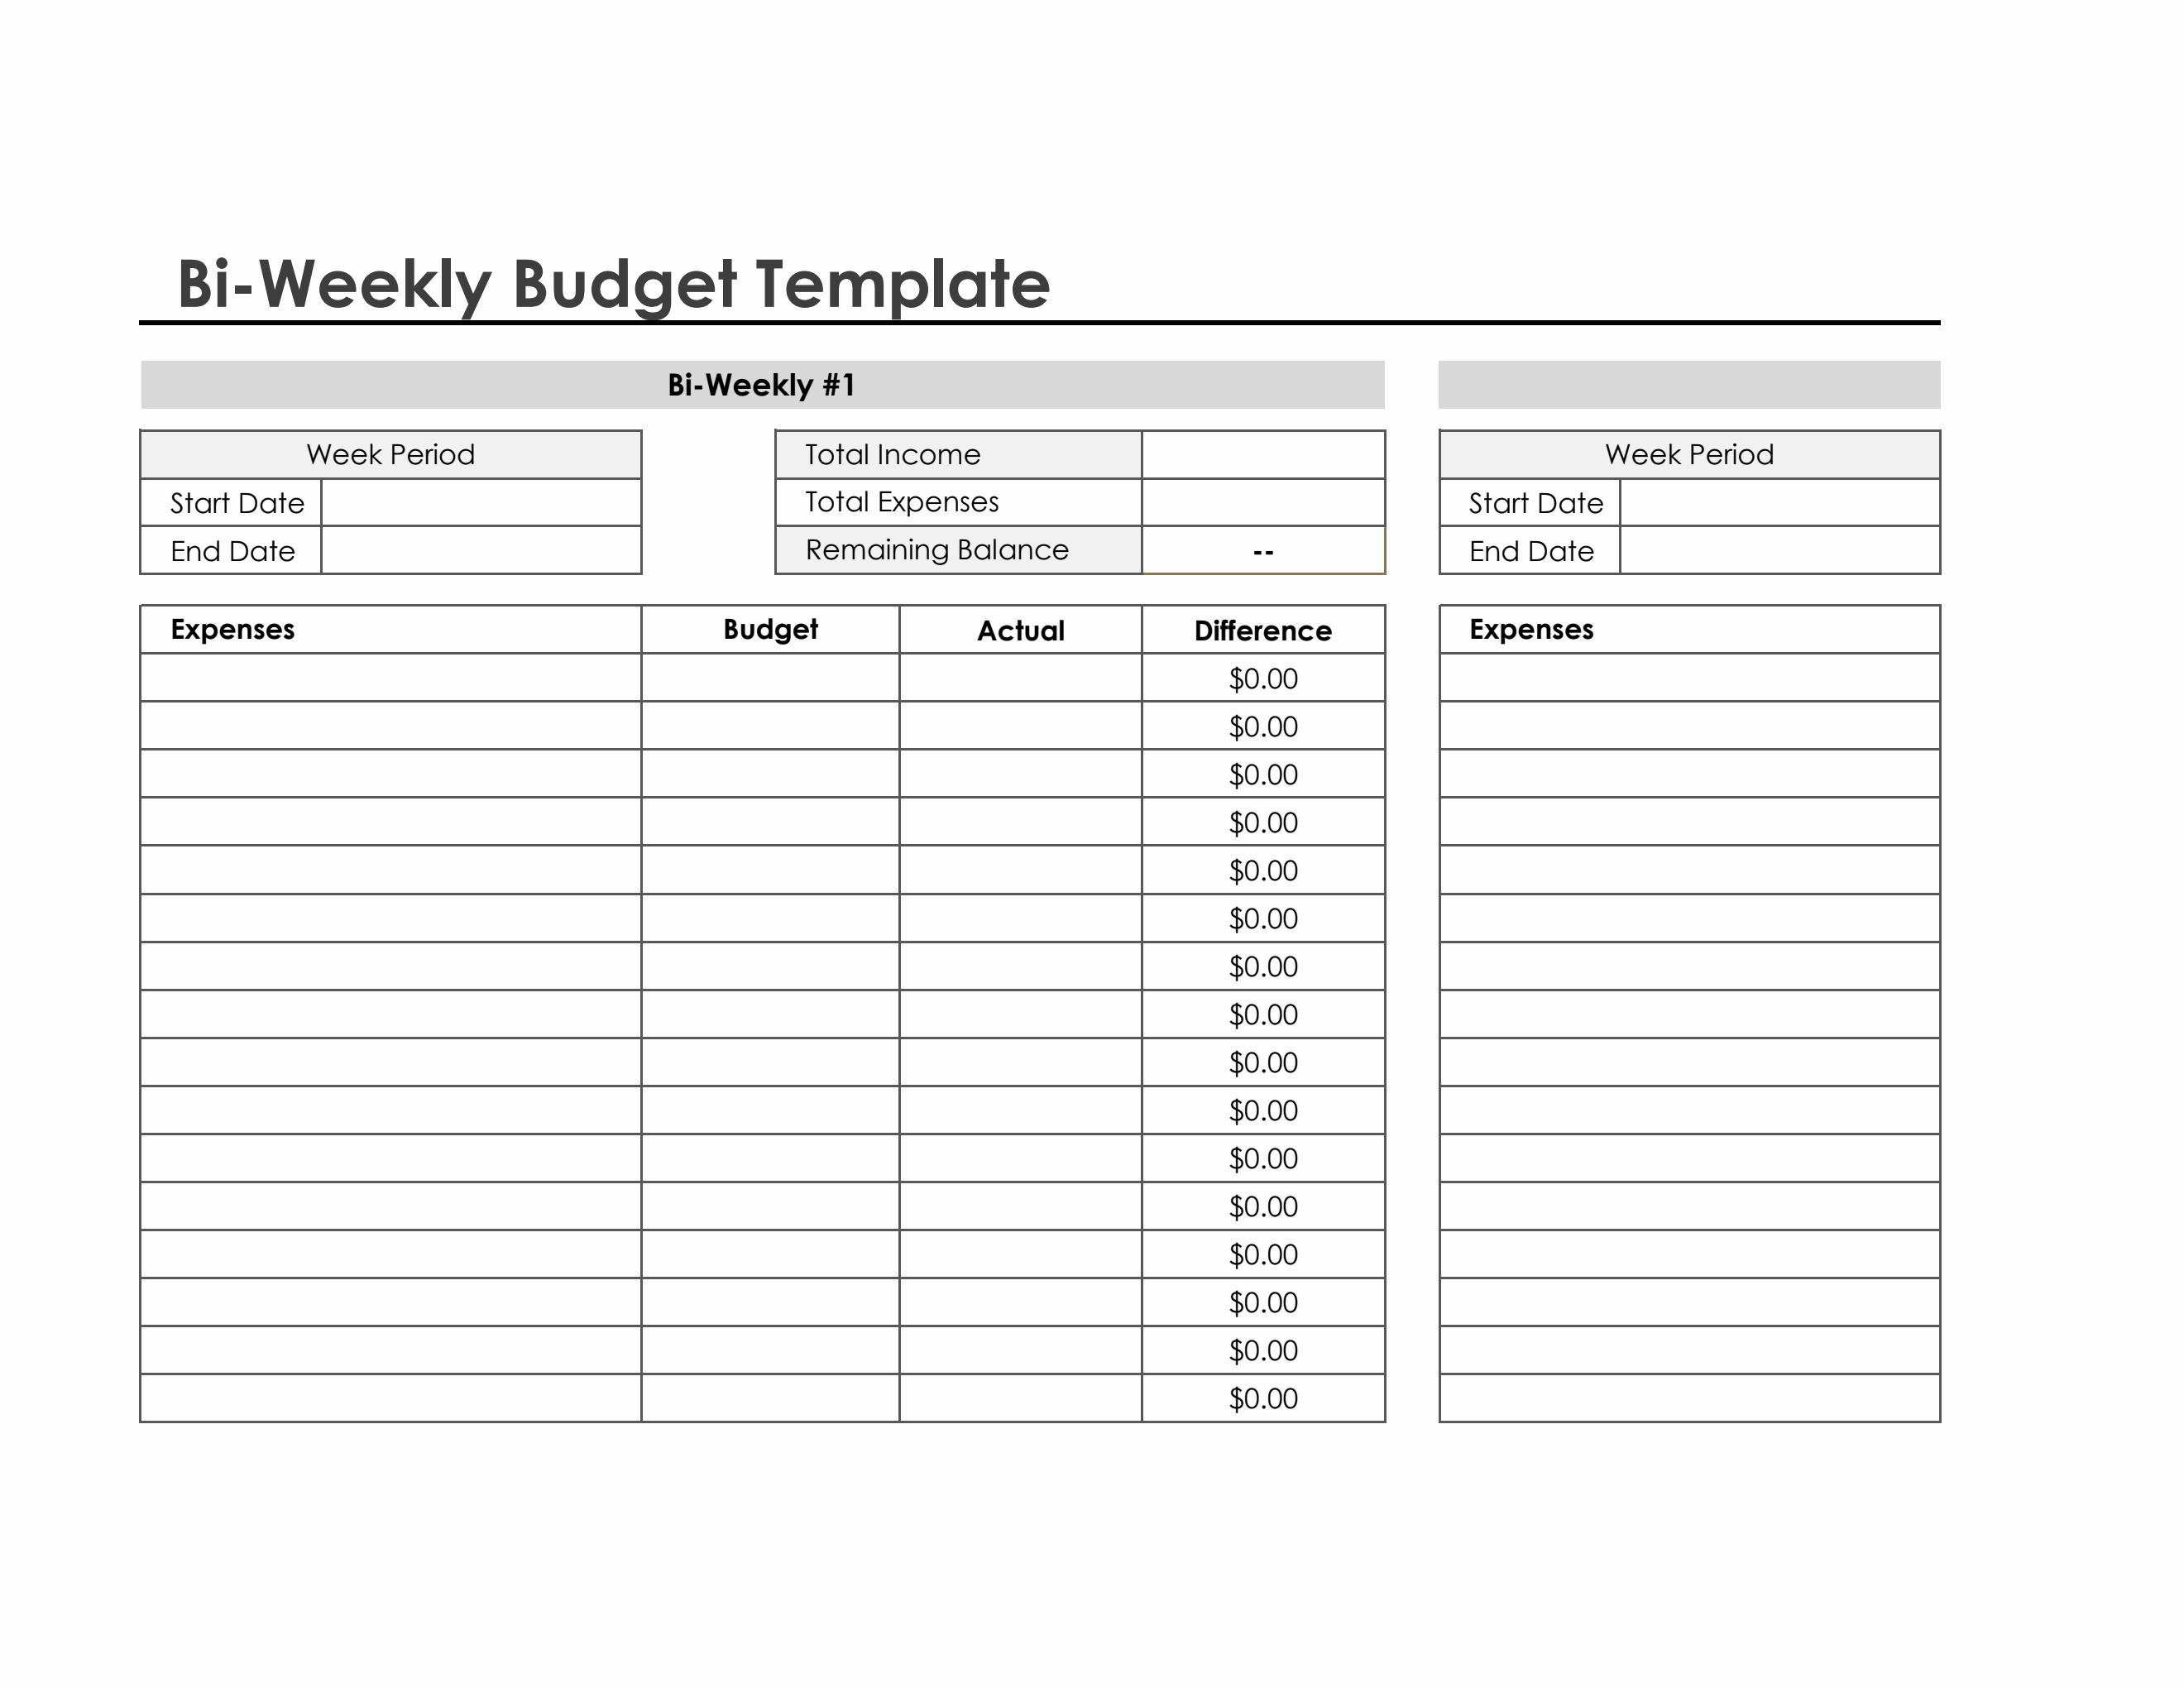 biweekly-budget-template-in-excel-simple